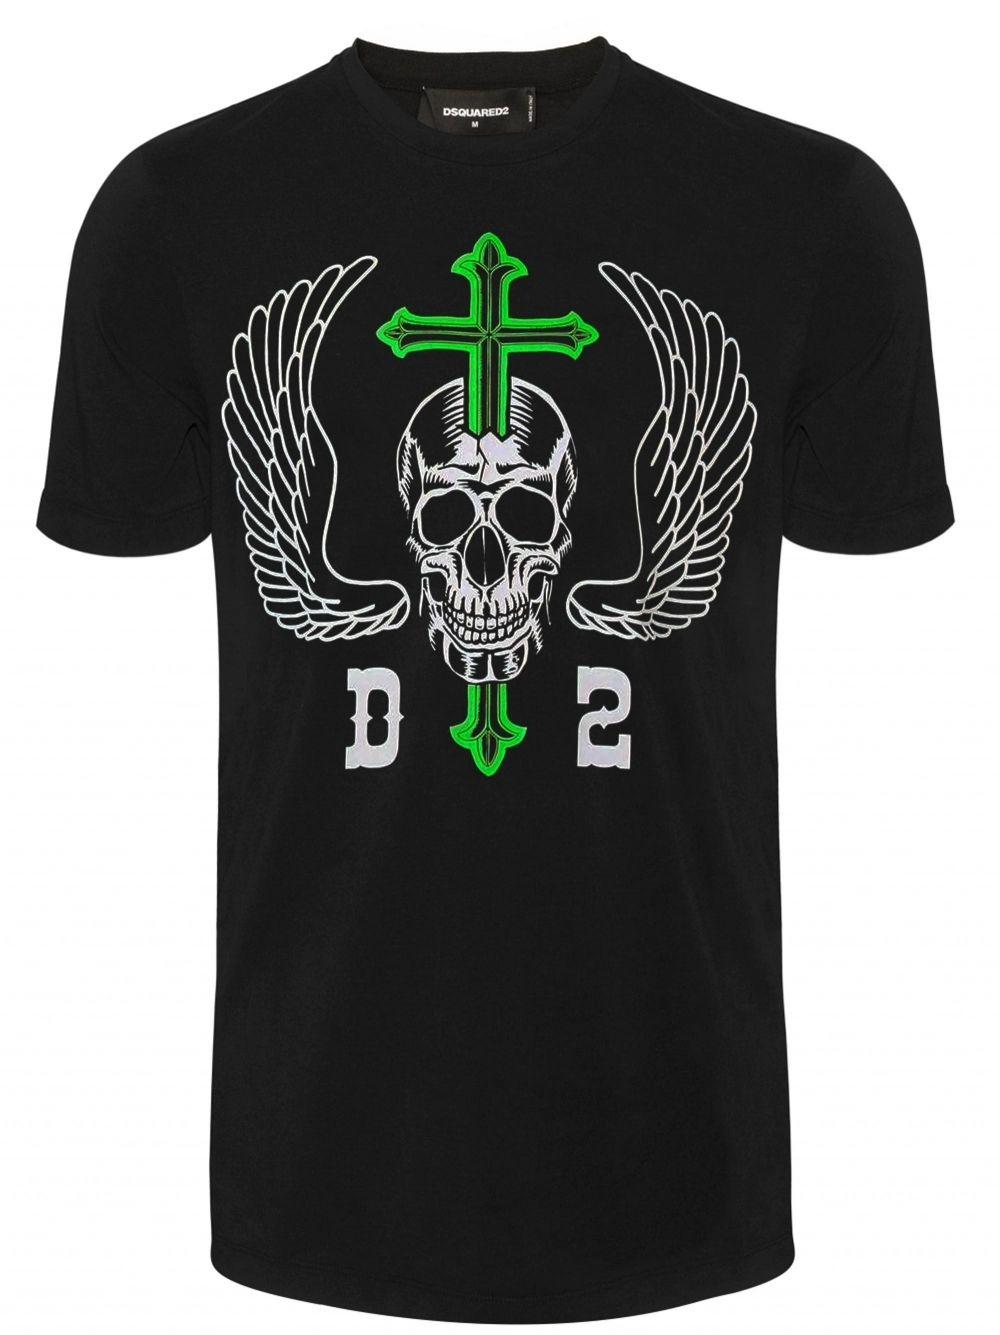 Black Skull Logo - DSQUARED2 Black Skull T-Shirt | Designerwear